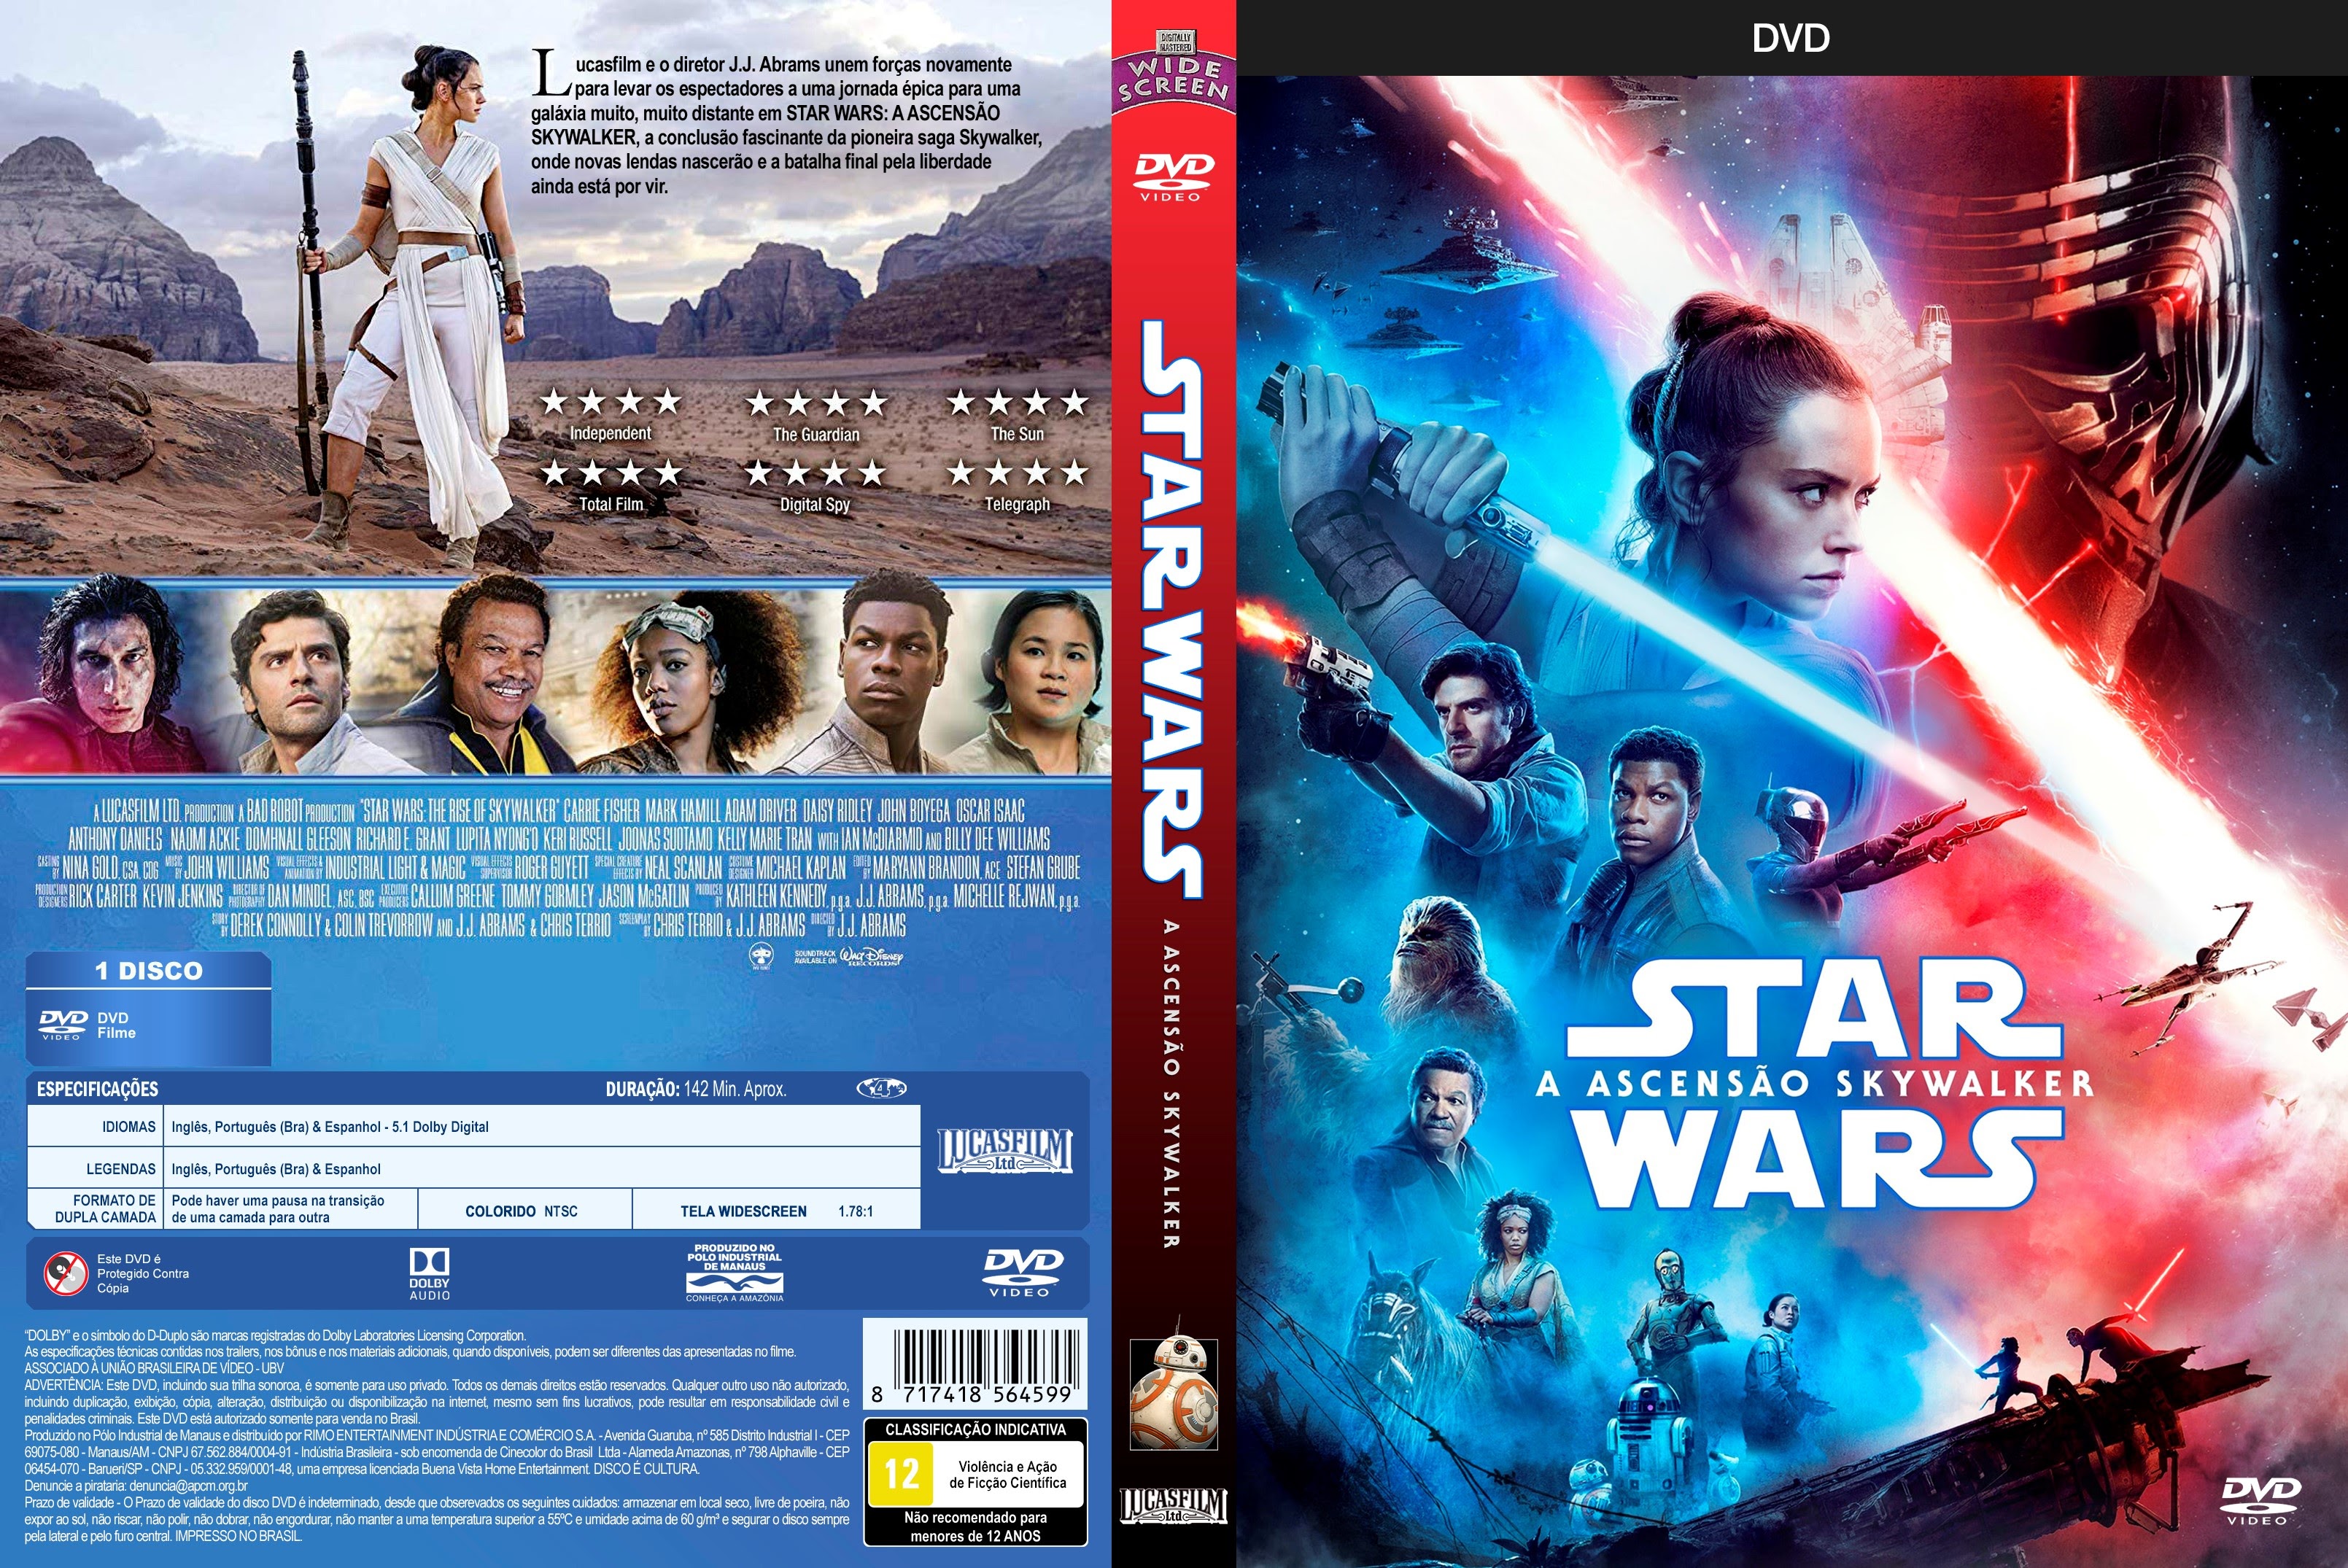 Star Wars: A Ascensão Skywalker': Teoria indica a verdadeira